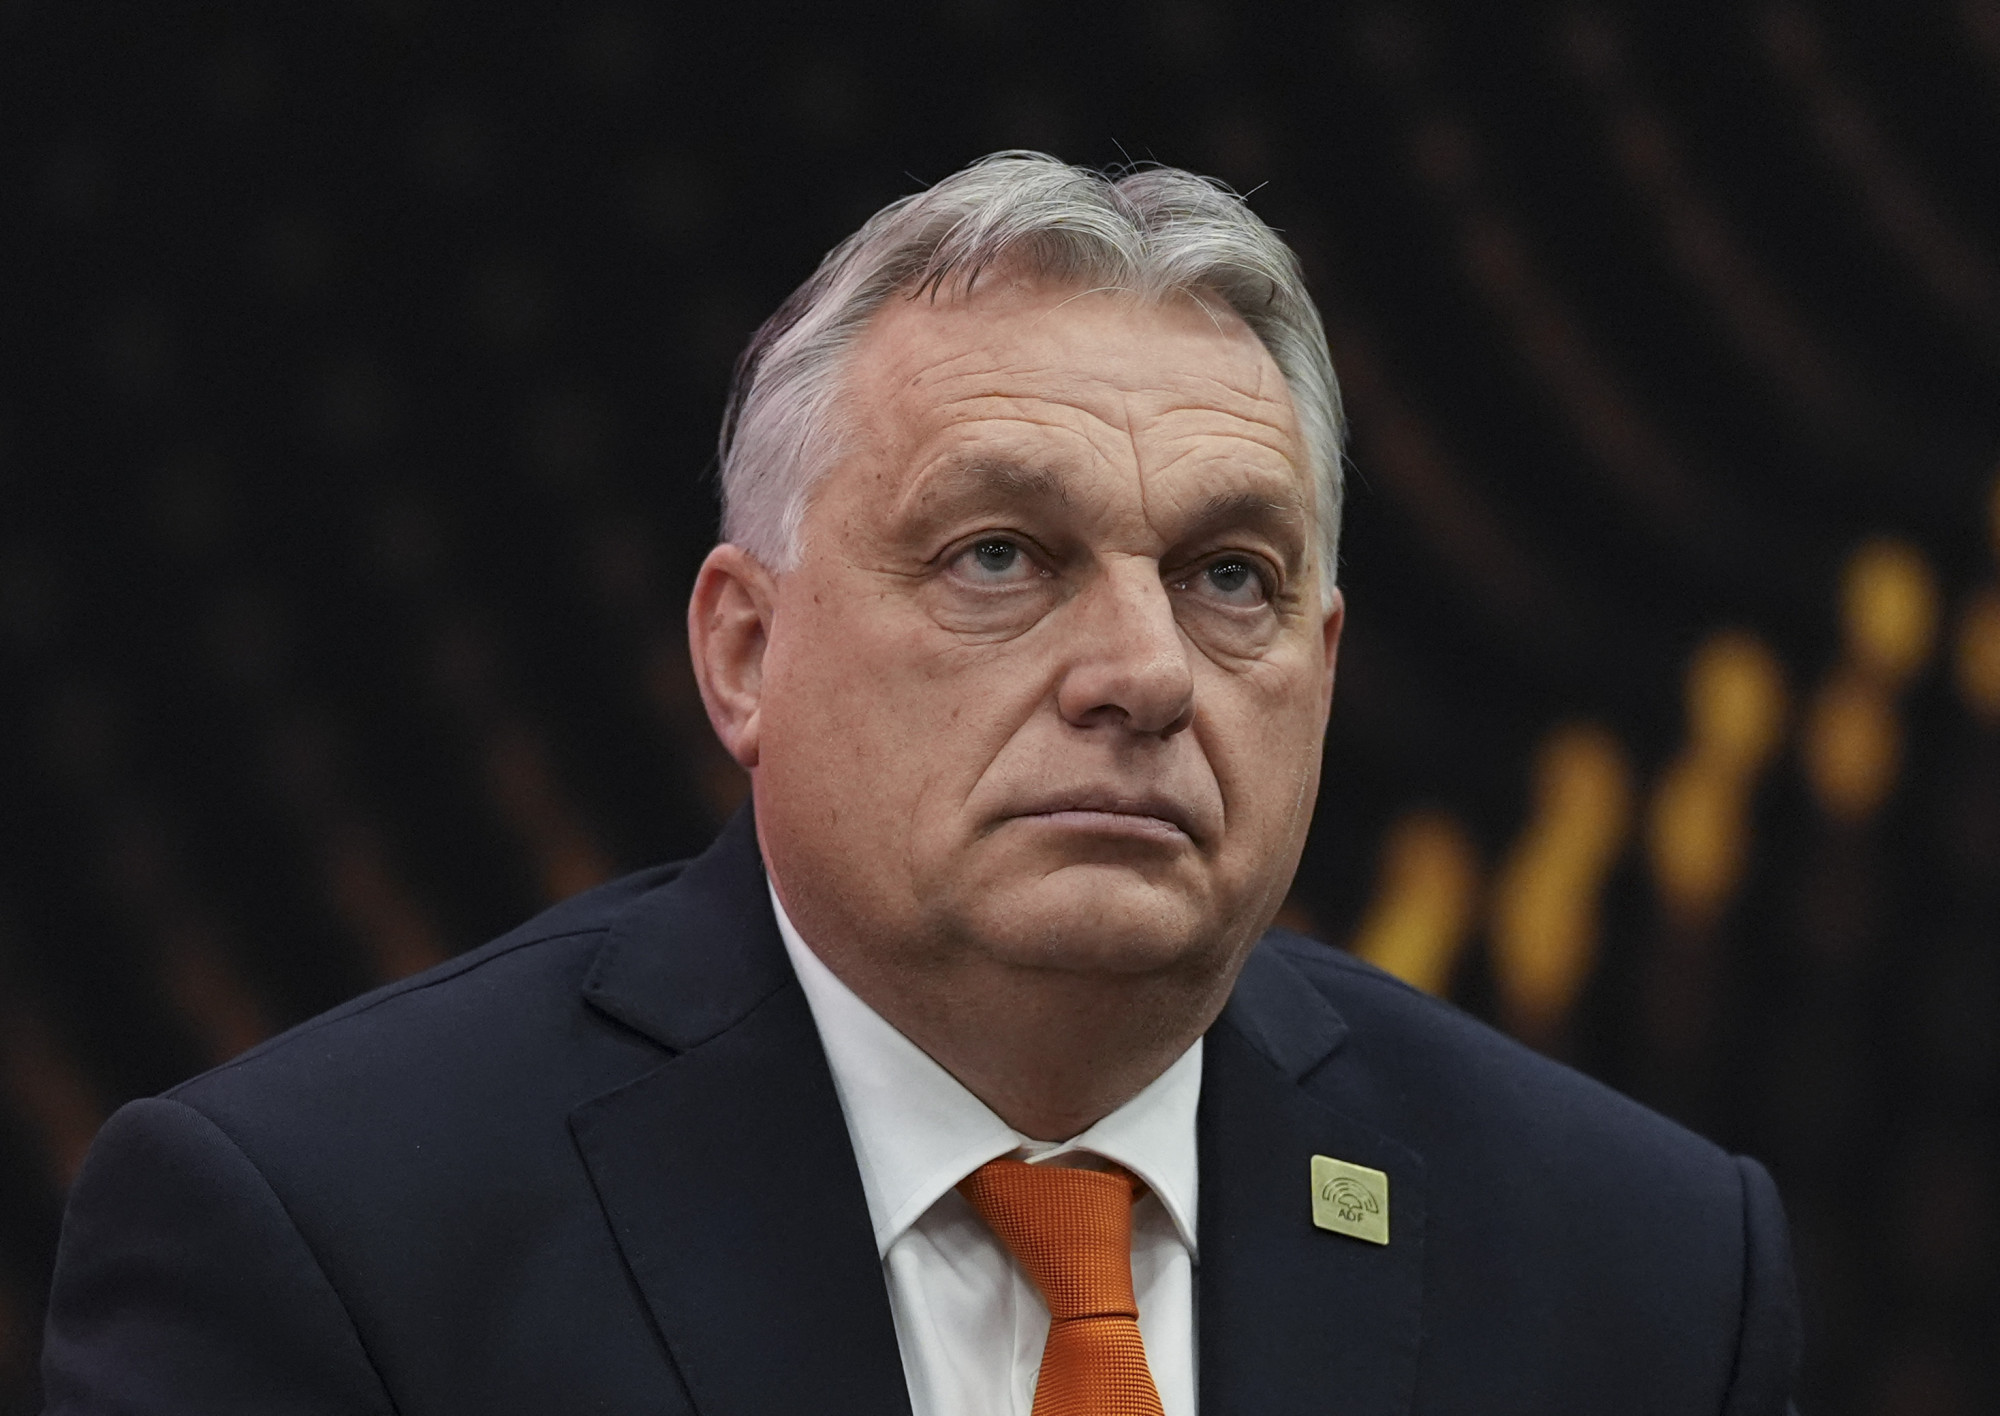 Orbán az oroszok kibertámadásáról: Nem fogok más kérdésekkel foglalkozni, csak a kampánnyal foglalkozom